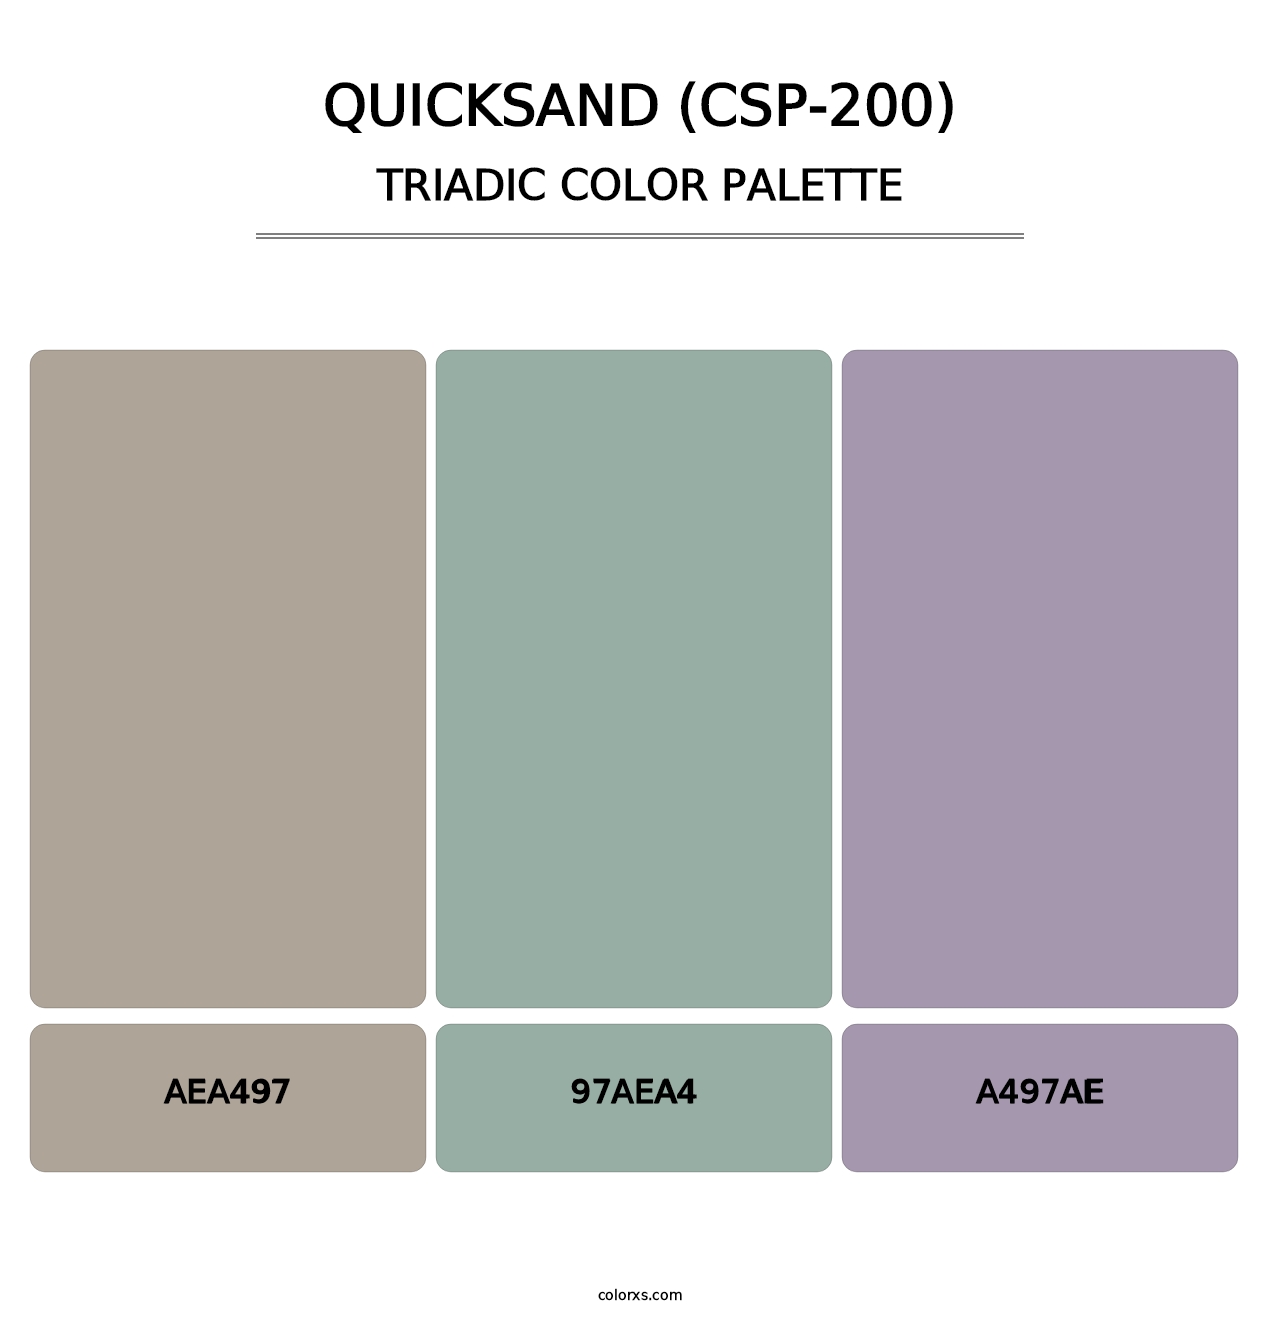 Quicksand (CSP-200) - Triadic Color Palette